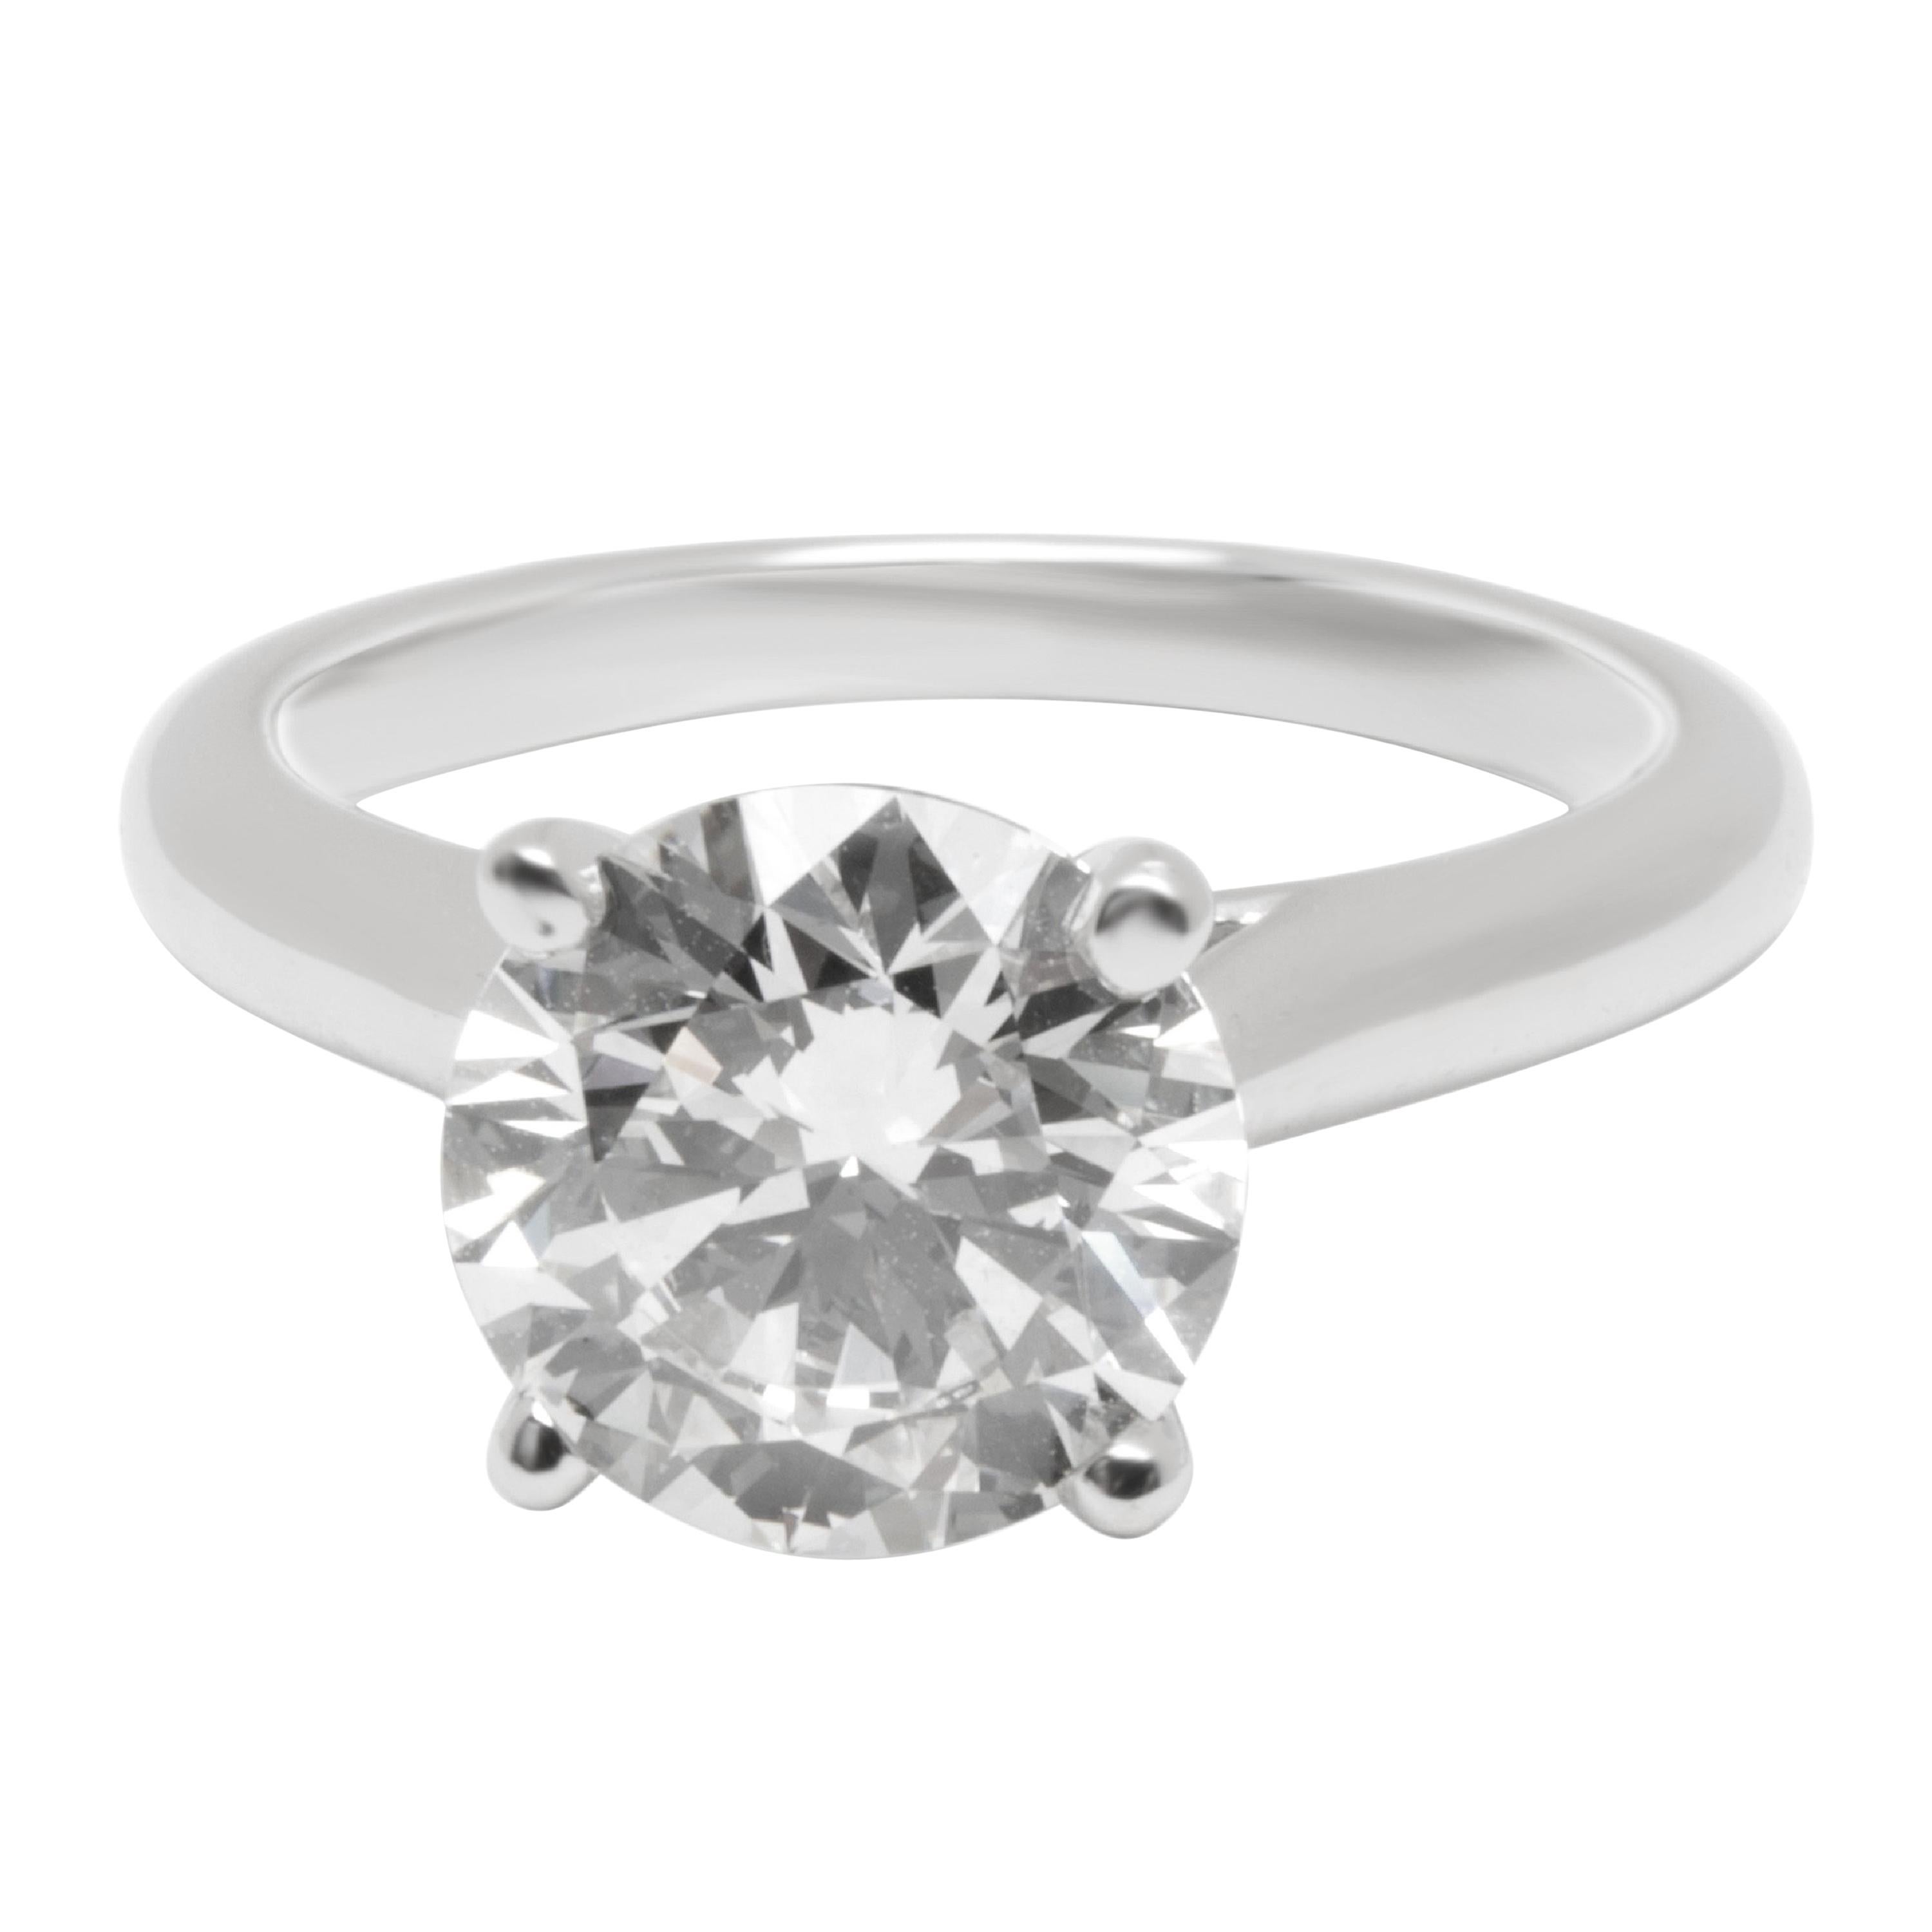 Cartier Diamond Solitaire Engagement Ring in Platinum ‘2.01 Carat H/VS1’